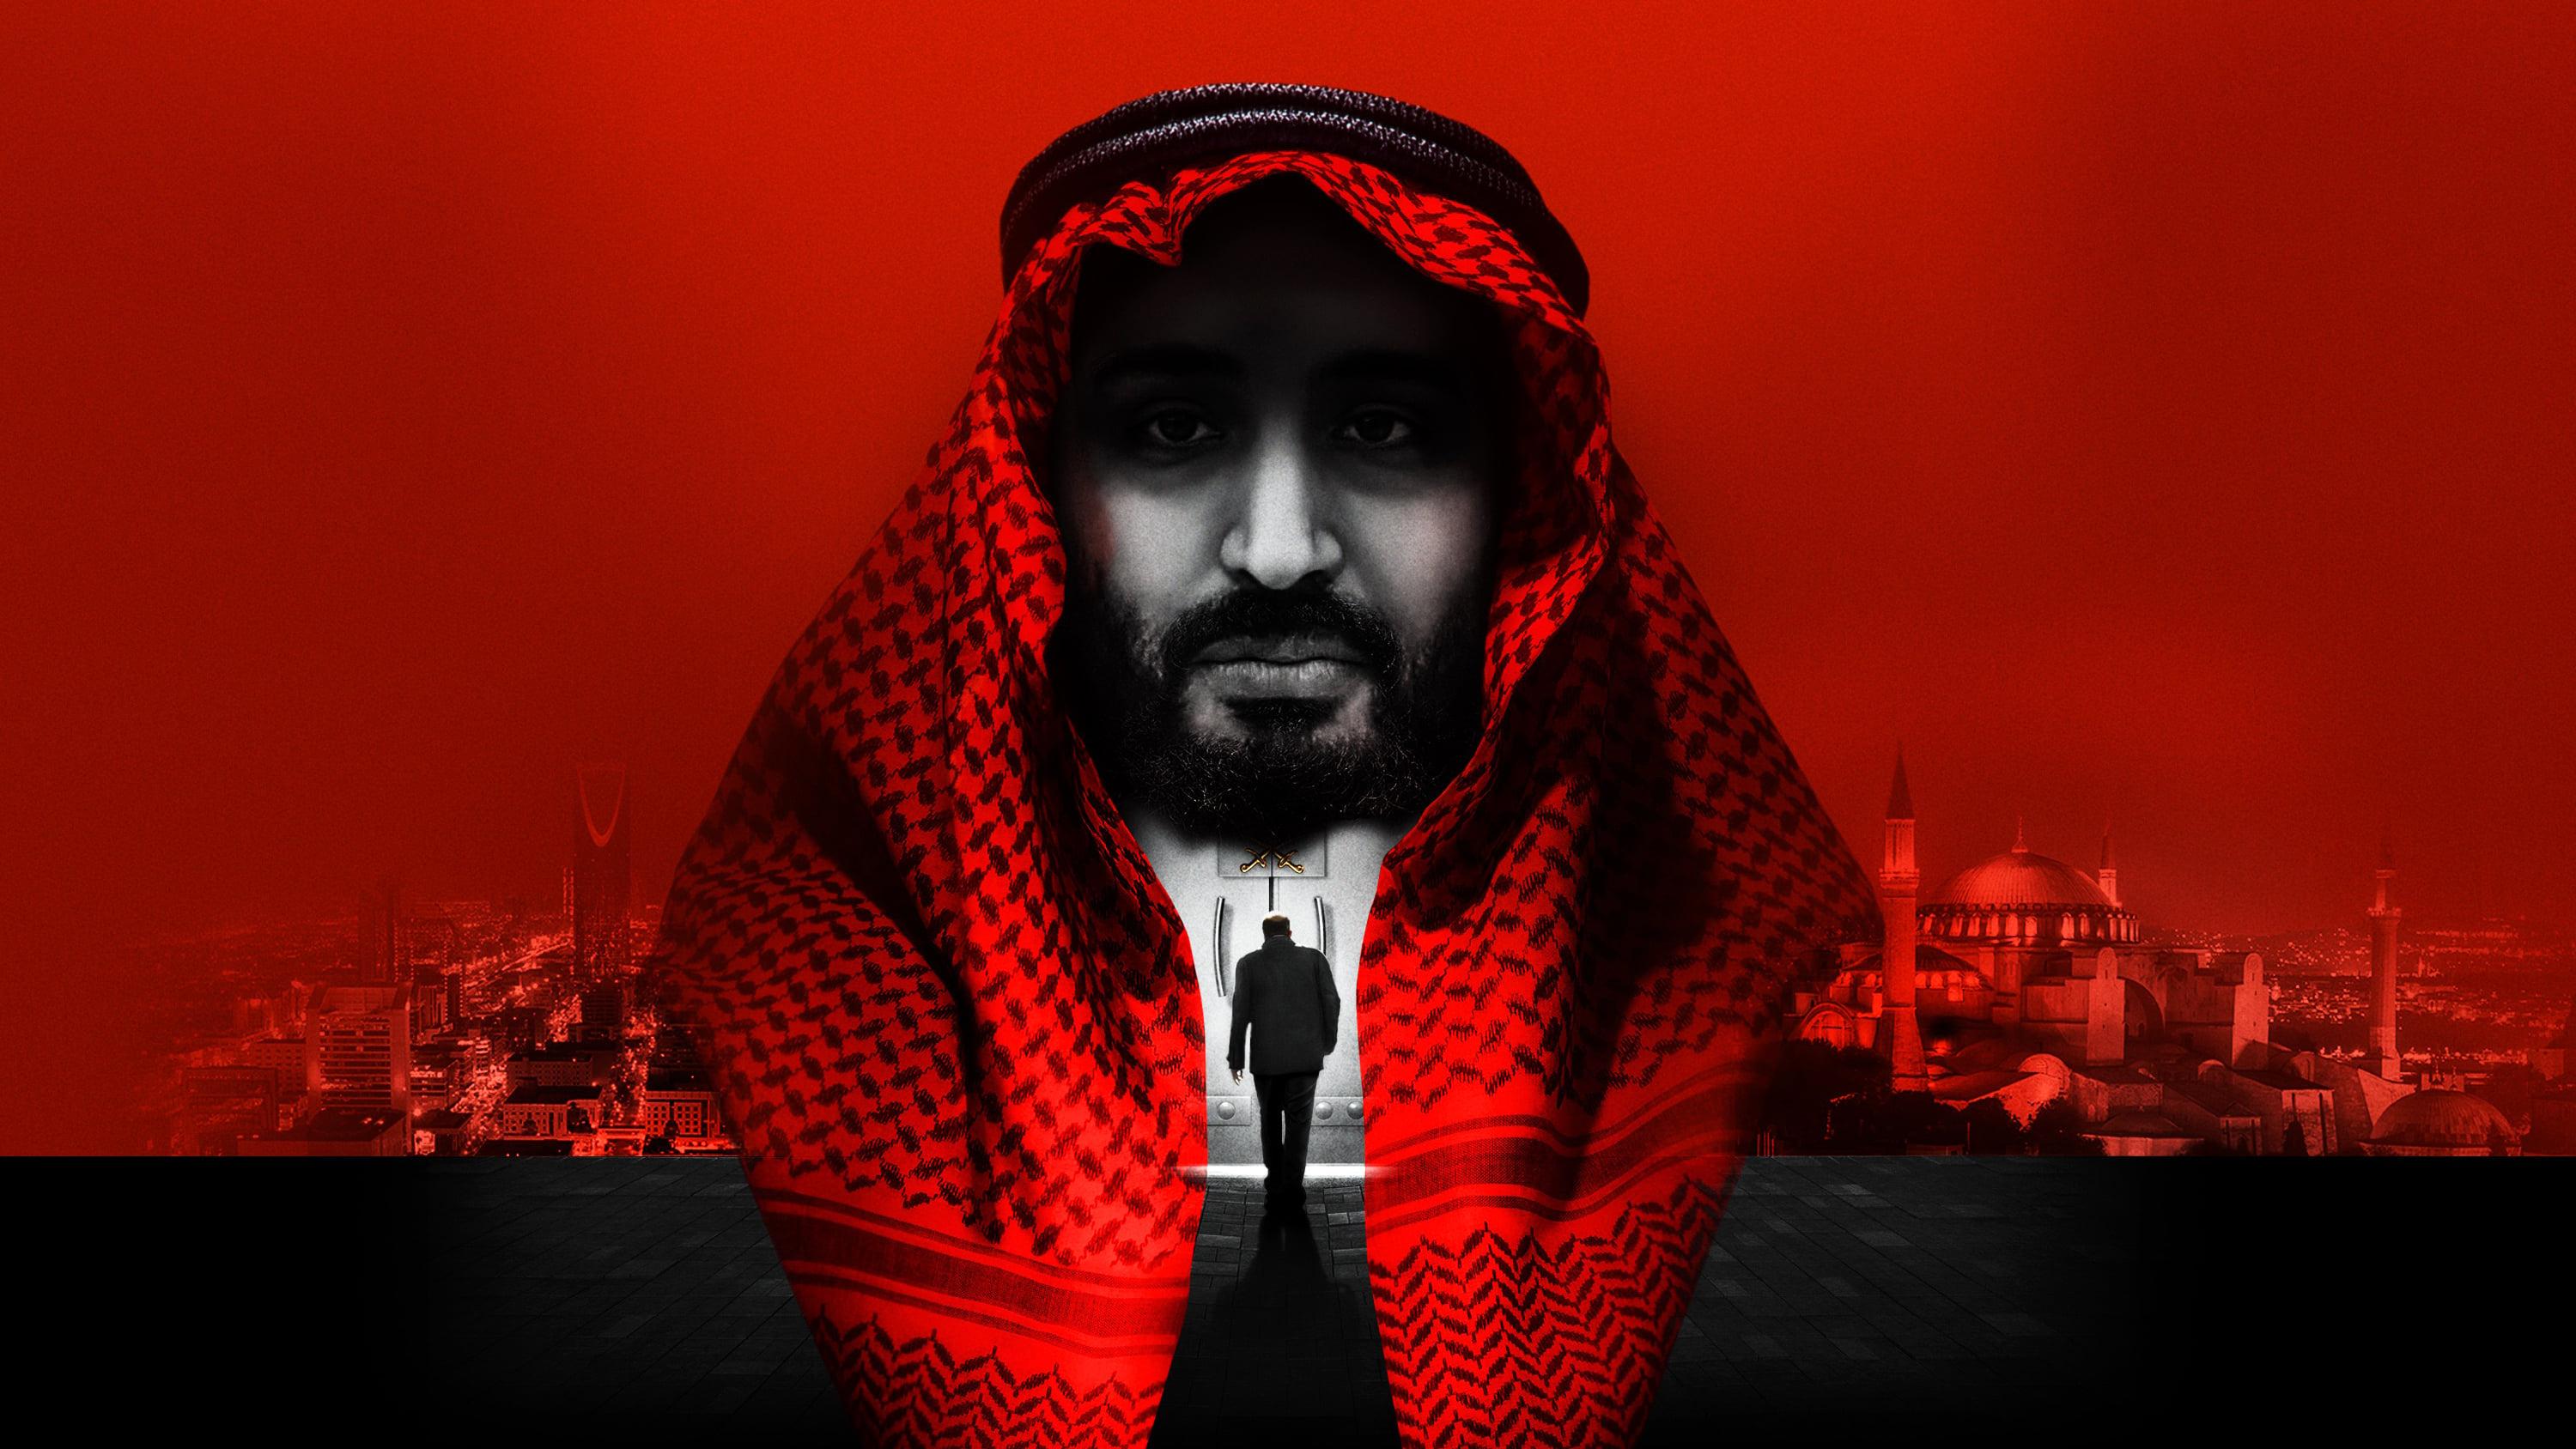 Omar Abdulaziz backdrop